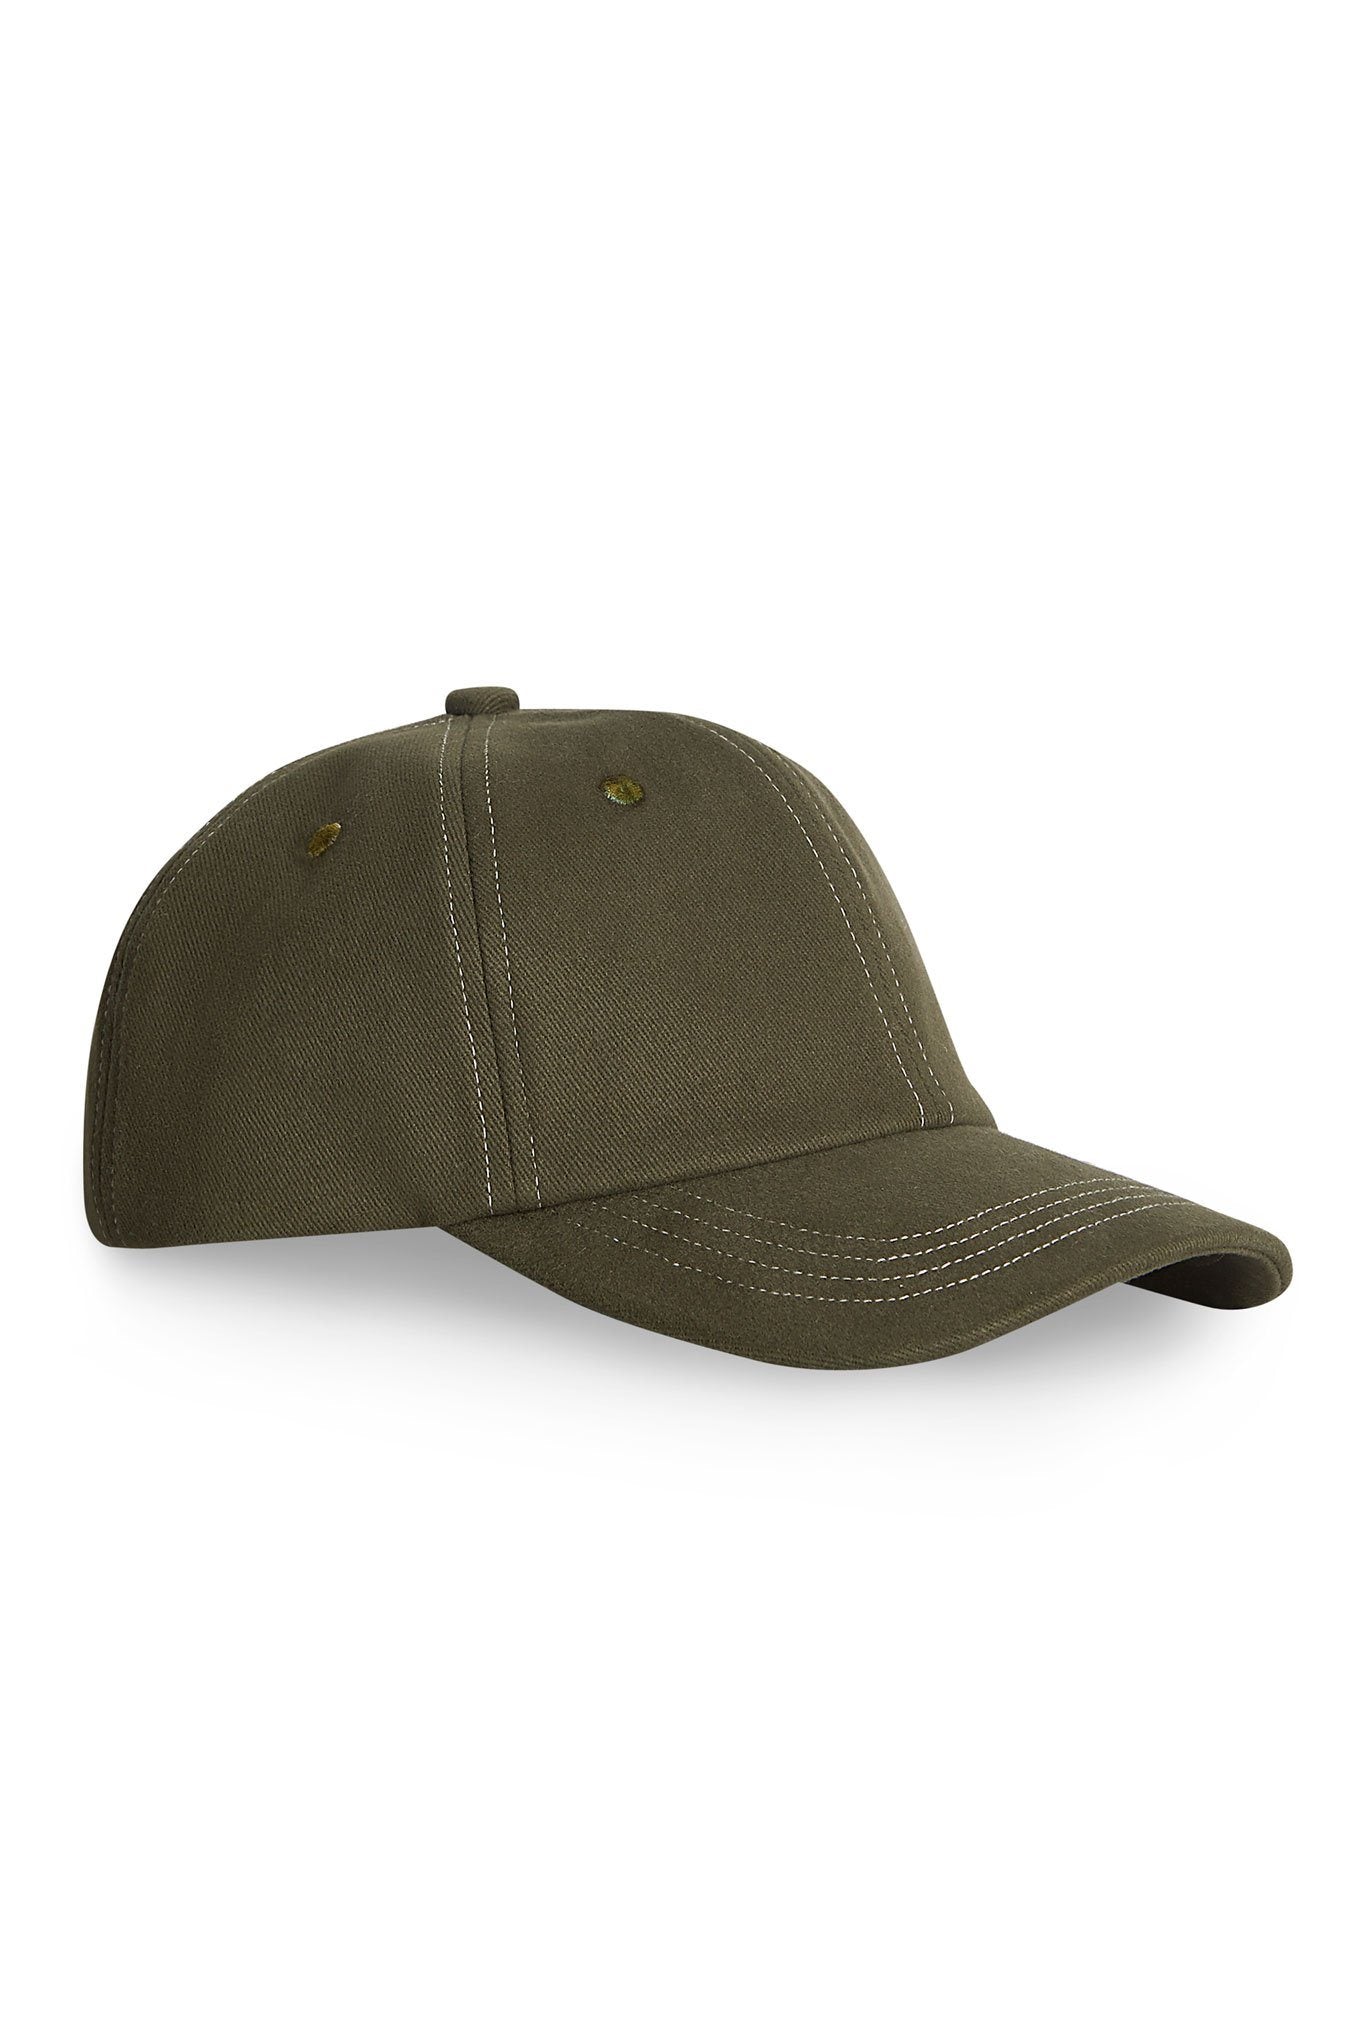 Hats - ROCKY UNISEX Cap Khaki